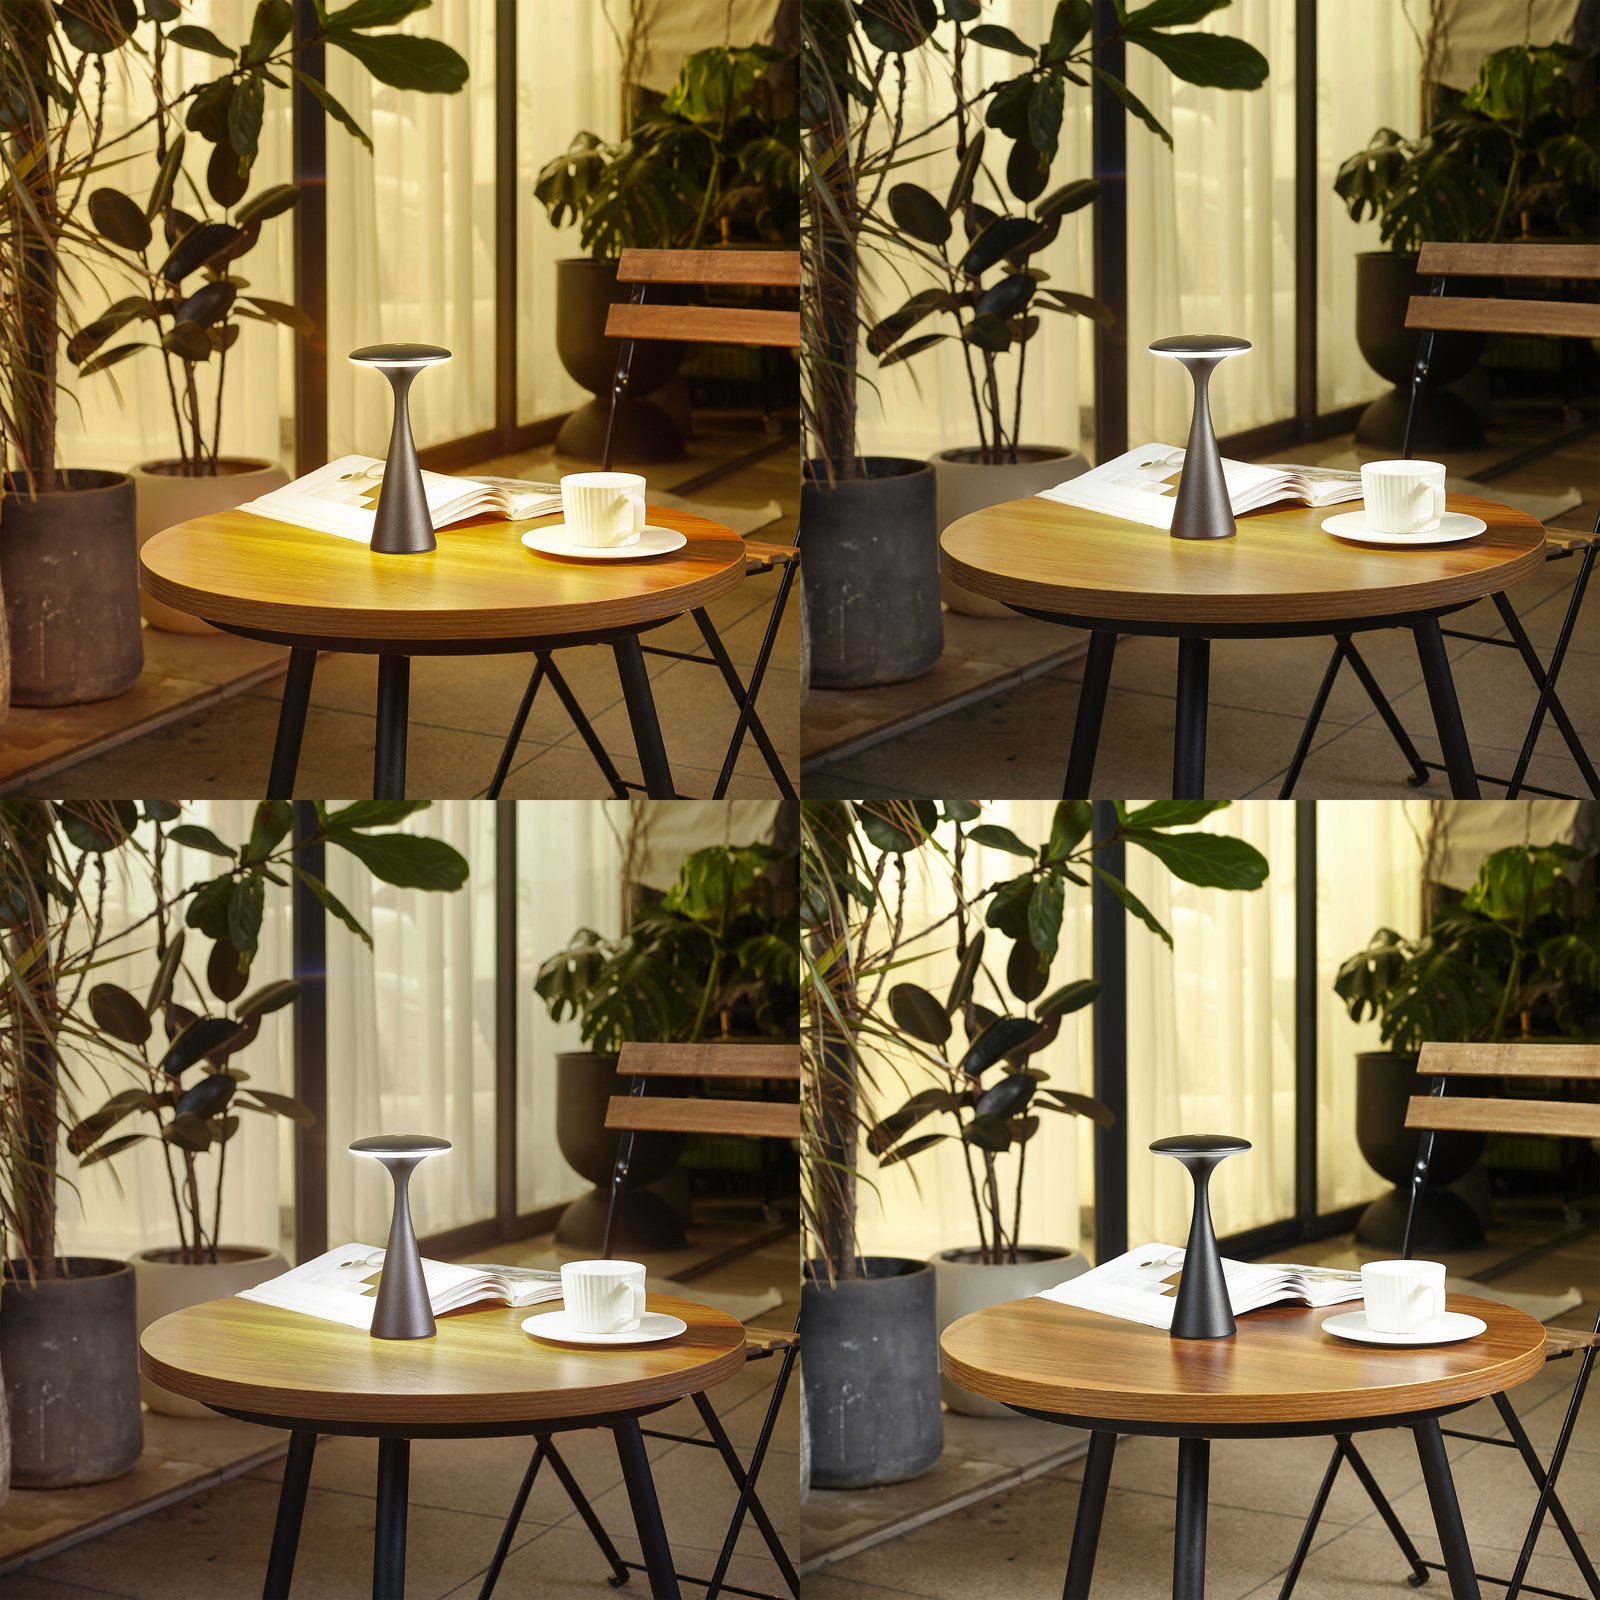 Lindby LED-es újratölthető asztali lámpa Evelen, fekete, IP54, CCT